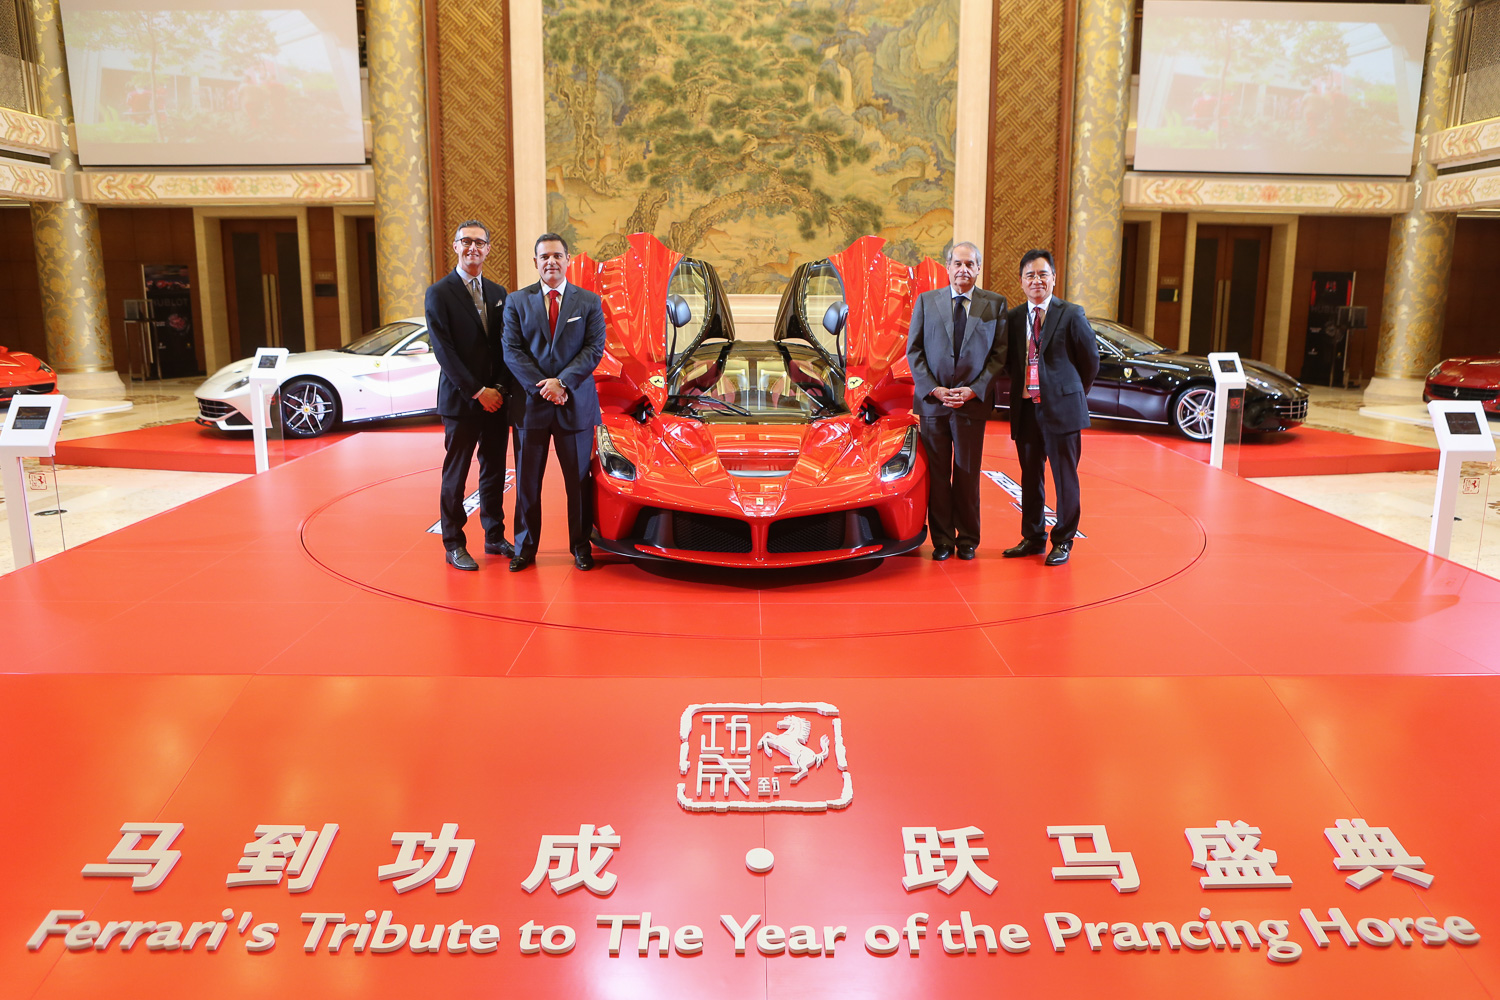  Gli eventi Ferrari per l’Anno del Cavallo in Cina